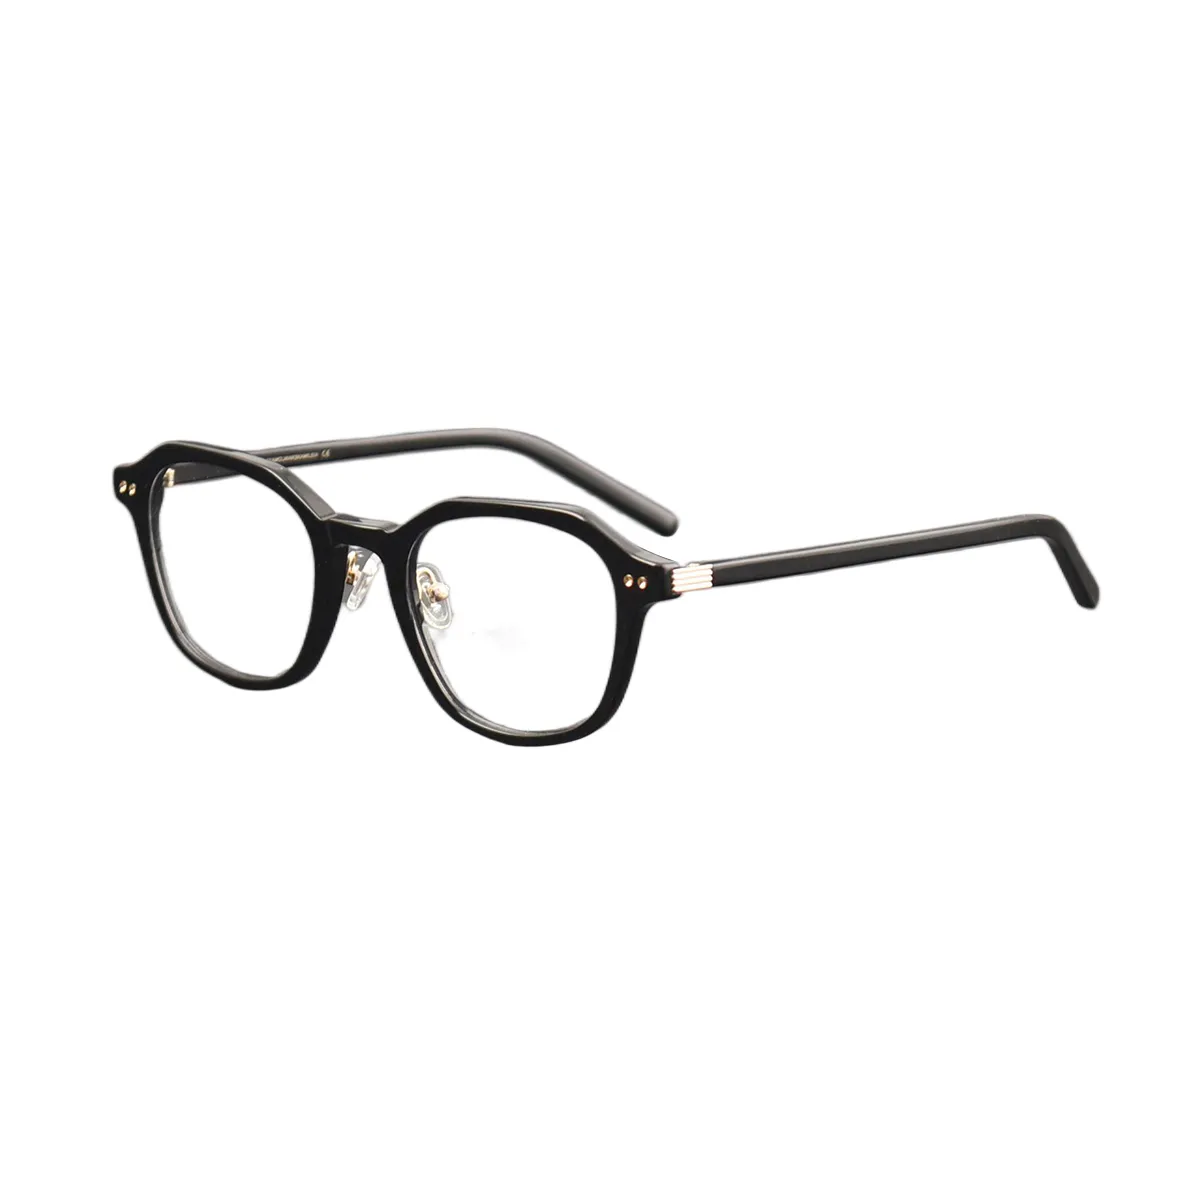 Square -  Black Glasses for Men & Women